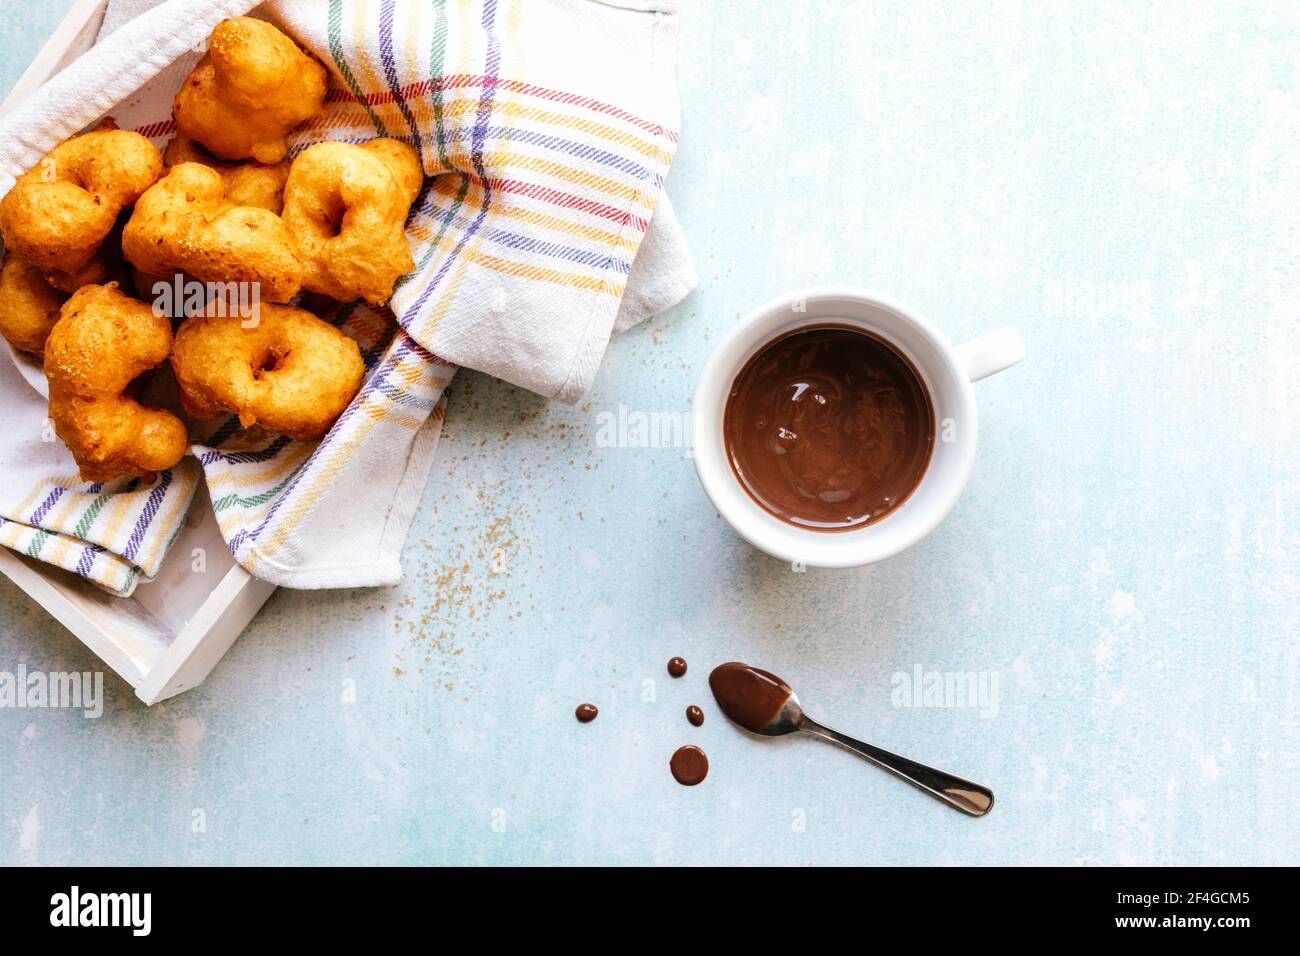 Piatto di frittelle dolci e una tazza di cioccolato. Foto Stock